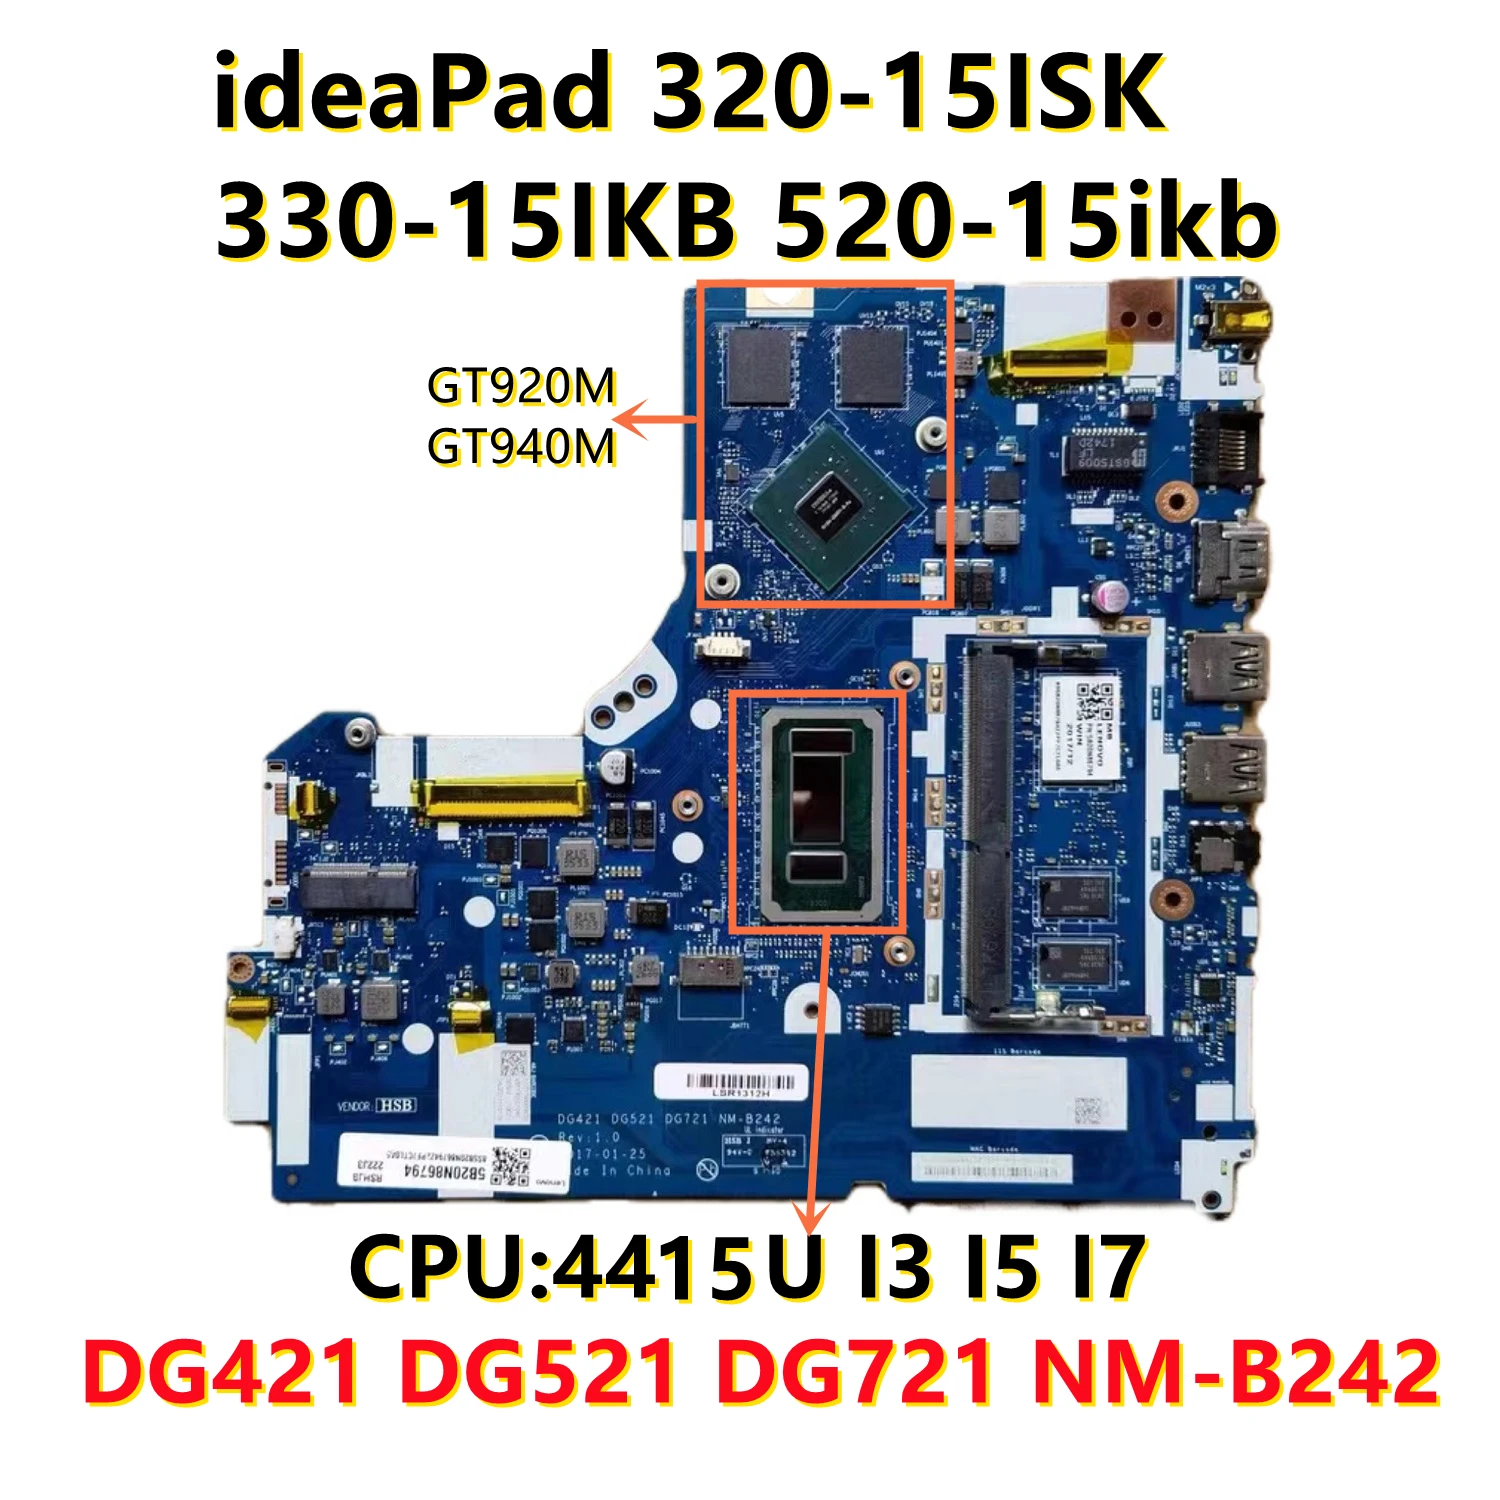 

DG421 DG521 DG721 NM-B242 Motherboard For Lenovo 320-15ISK 320-17ISK 520-15IKB with 4415U i3 i5 i7 cpu GT940M GT920M GPU 4GB-RAM